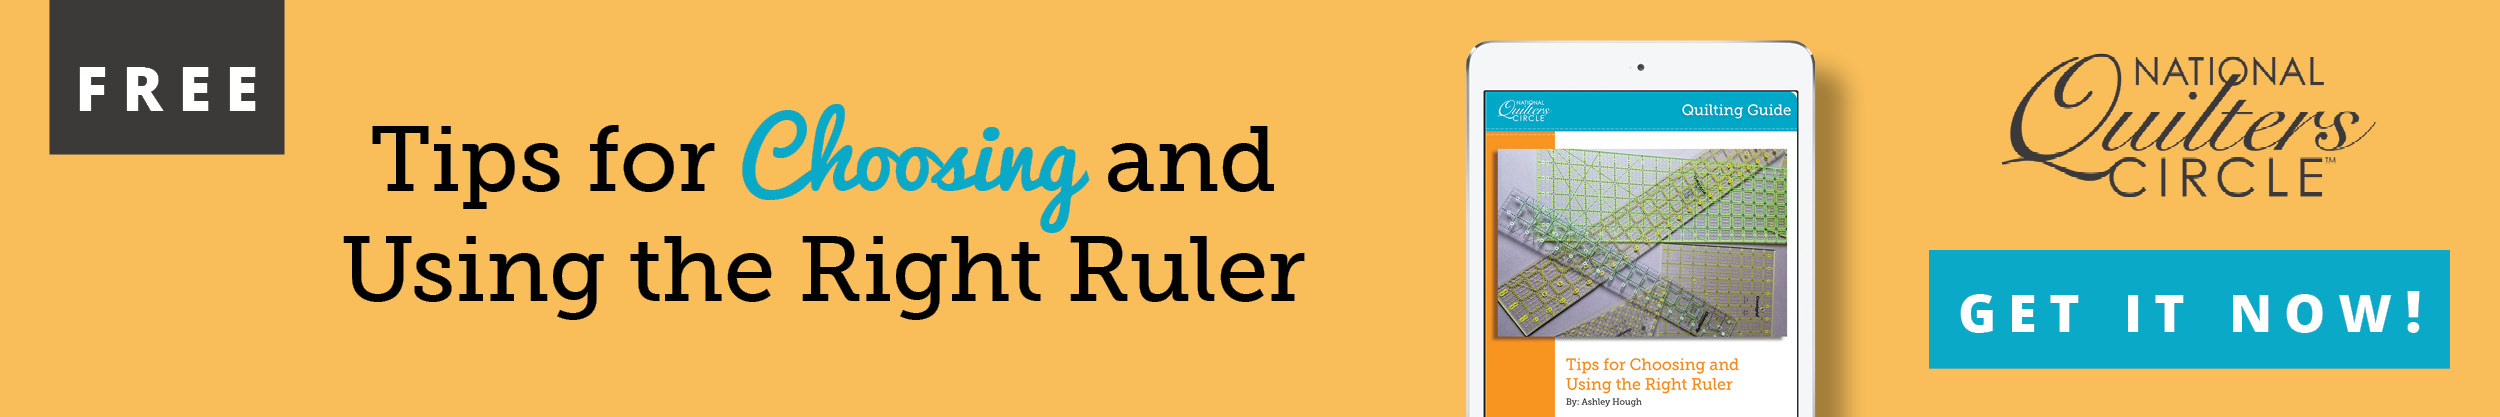 Tips for choosing the right ruler banner